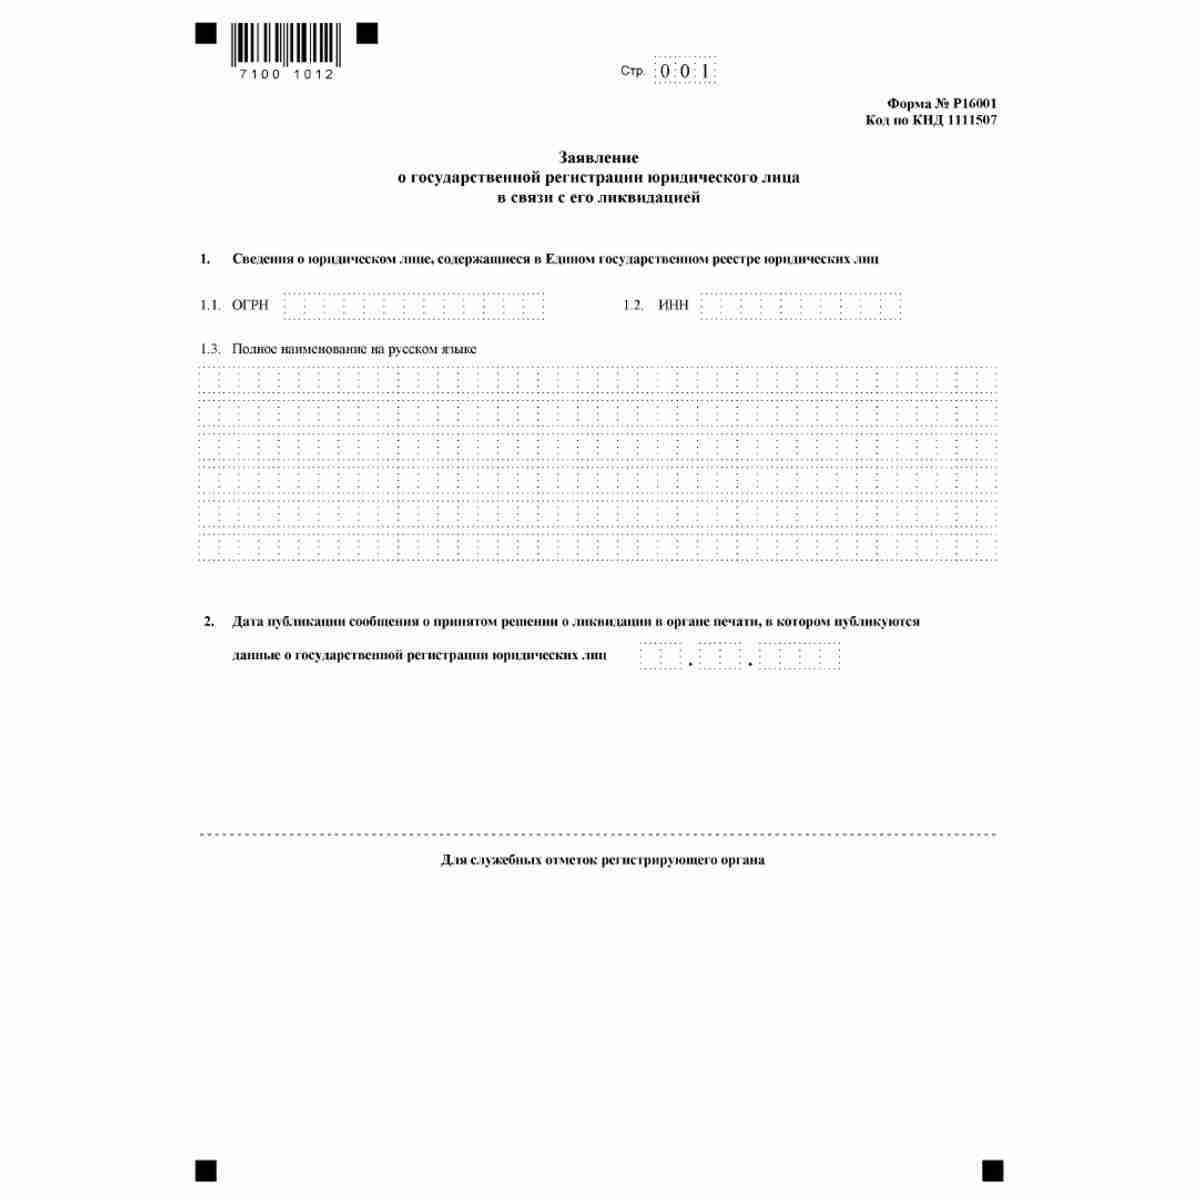 Форма №Р16001 "Заявление о государственной регистрации юридического лица в связи с его ликвидацией" (КНД 1111507)